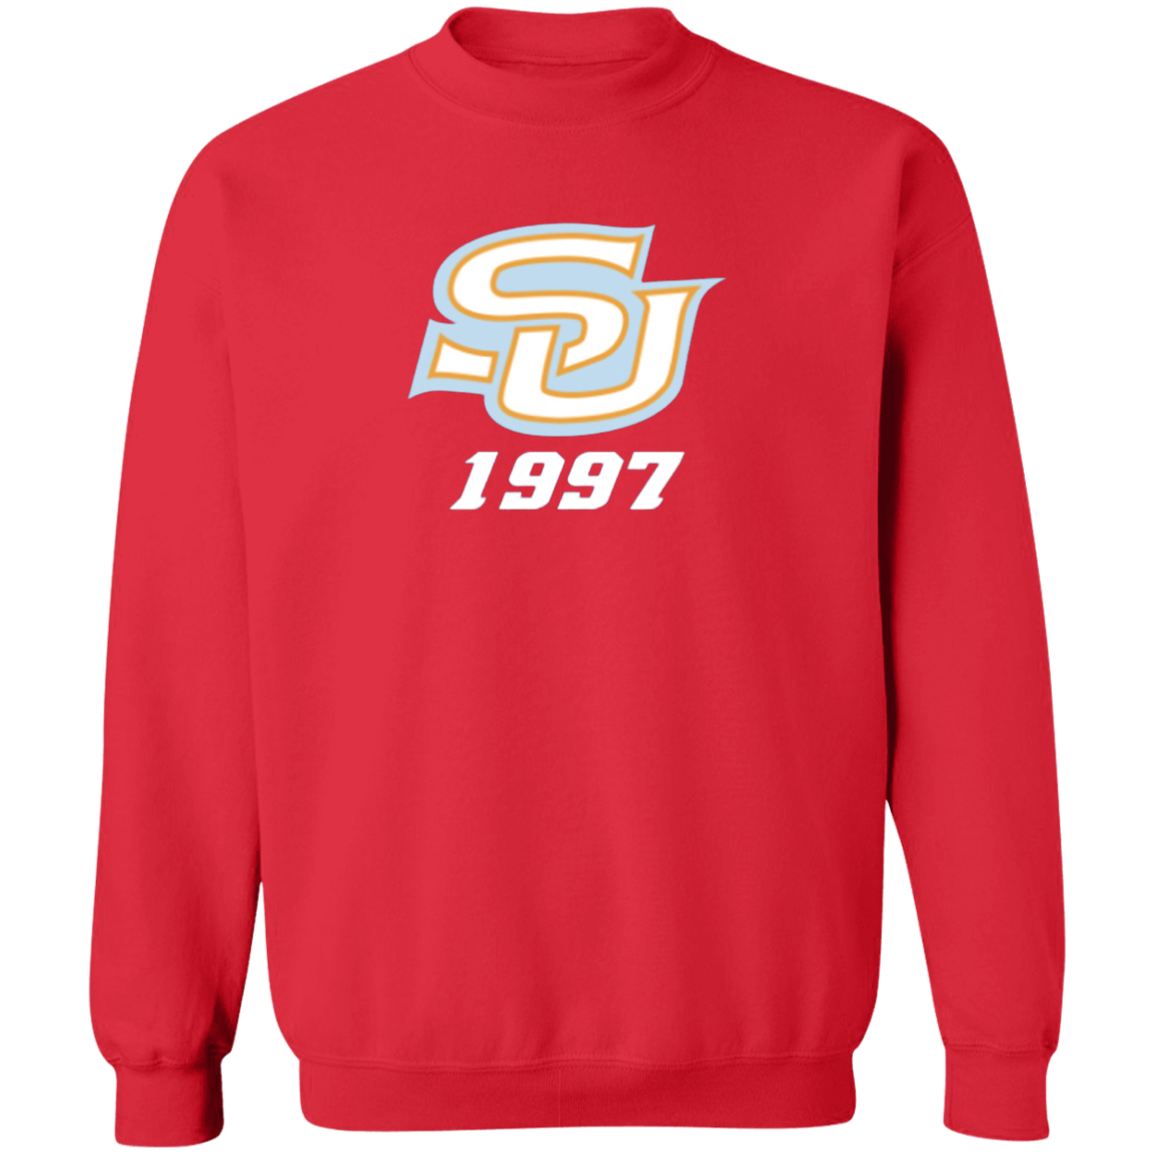 SU c/o 1997 Z65x Pullover Crewneck Sweatshirt 8 oz (Closeout)